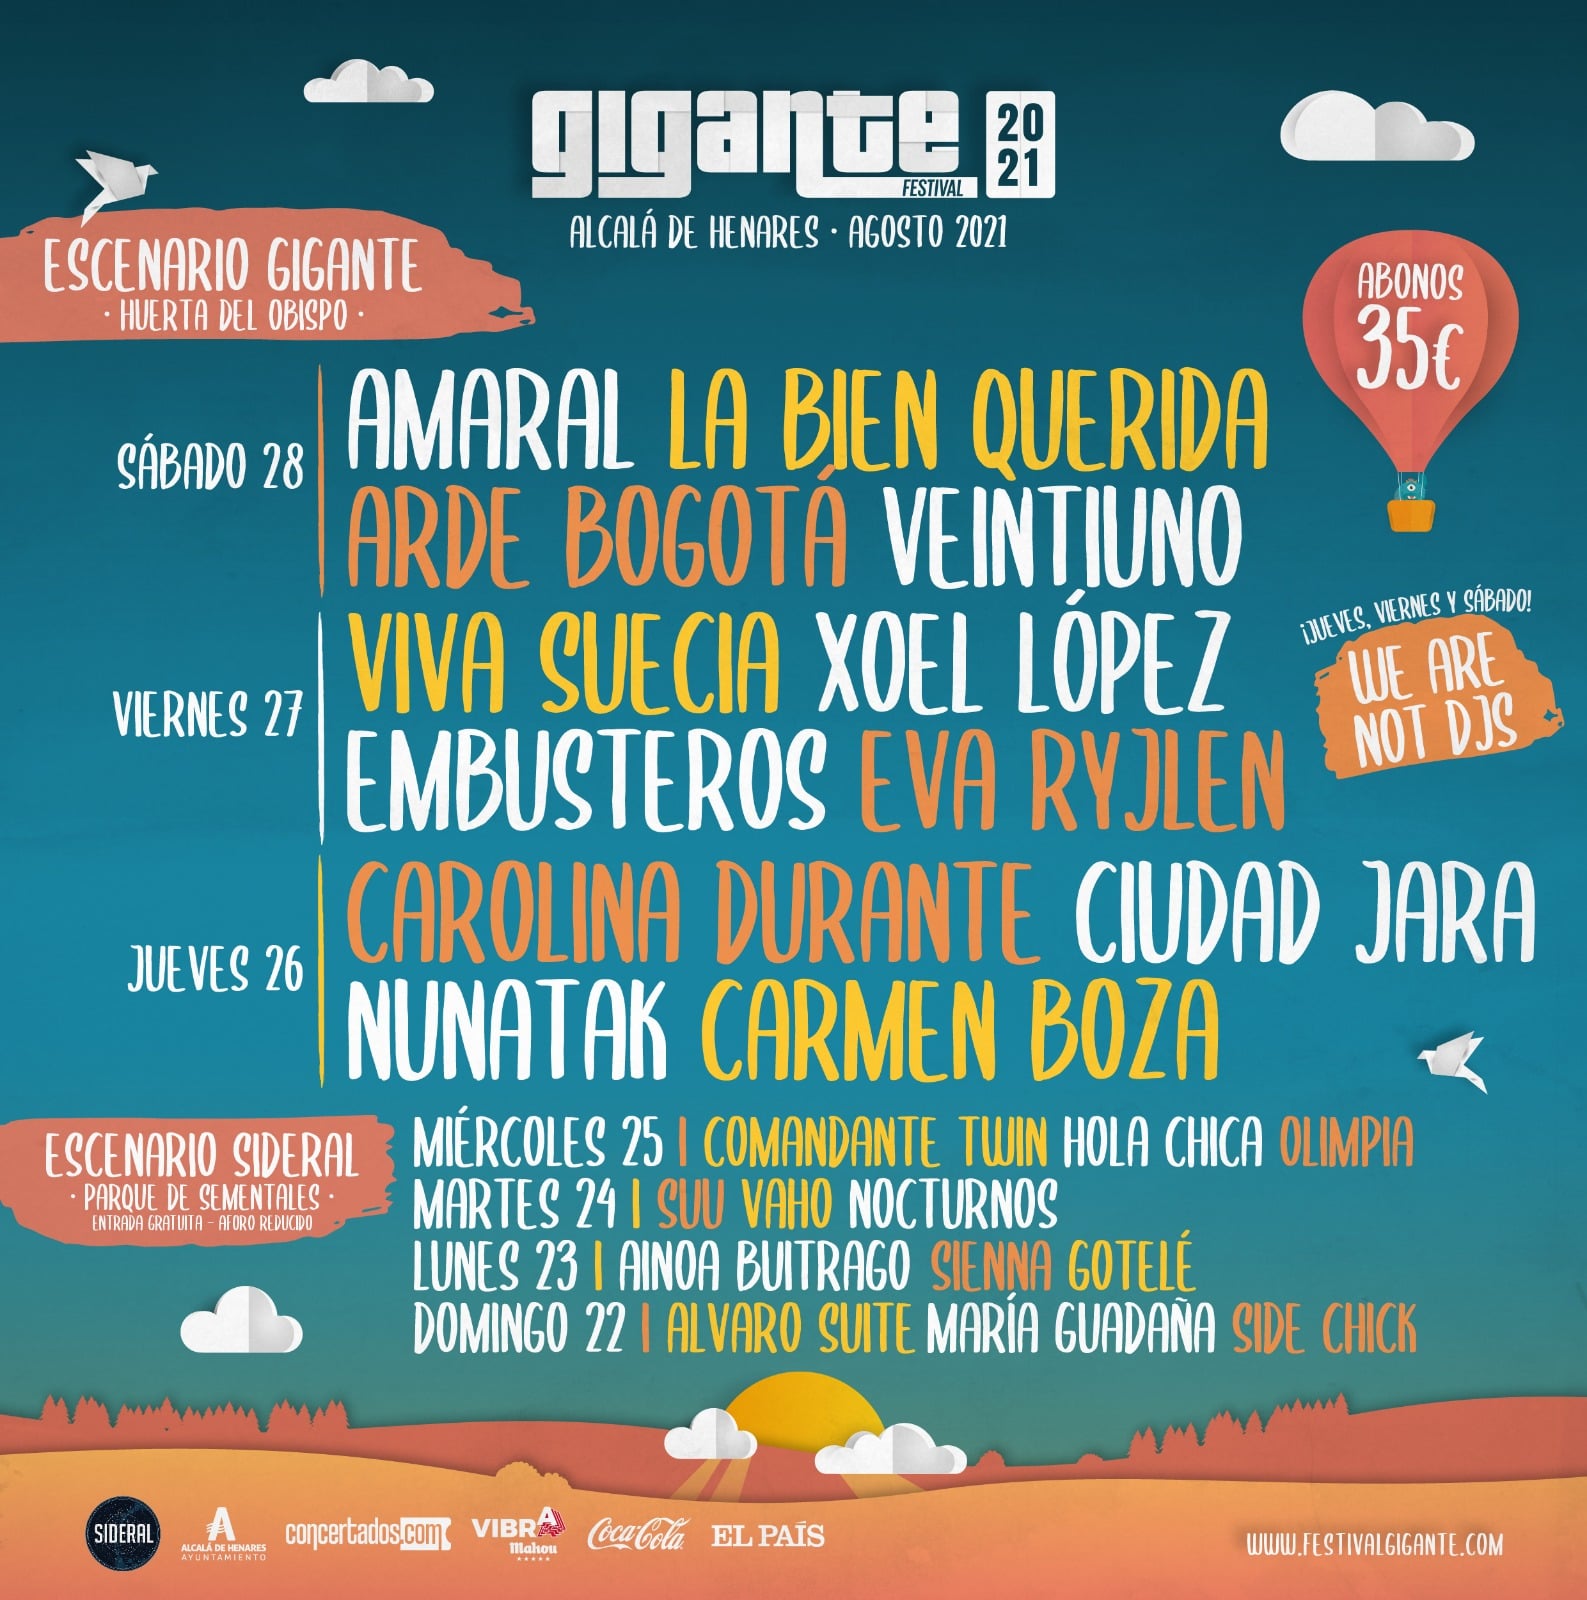 Festival Gigante 2021: Álvaro Suite + María Guadaña + Side Chick